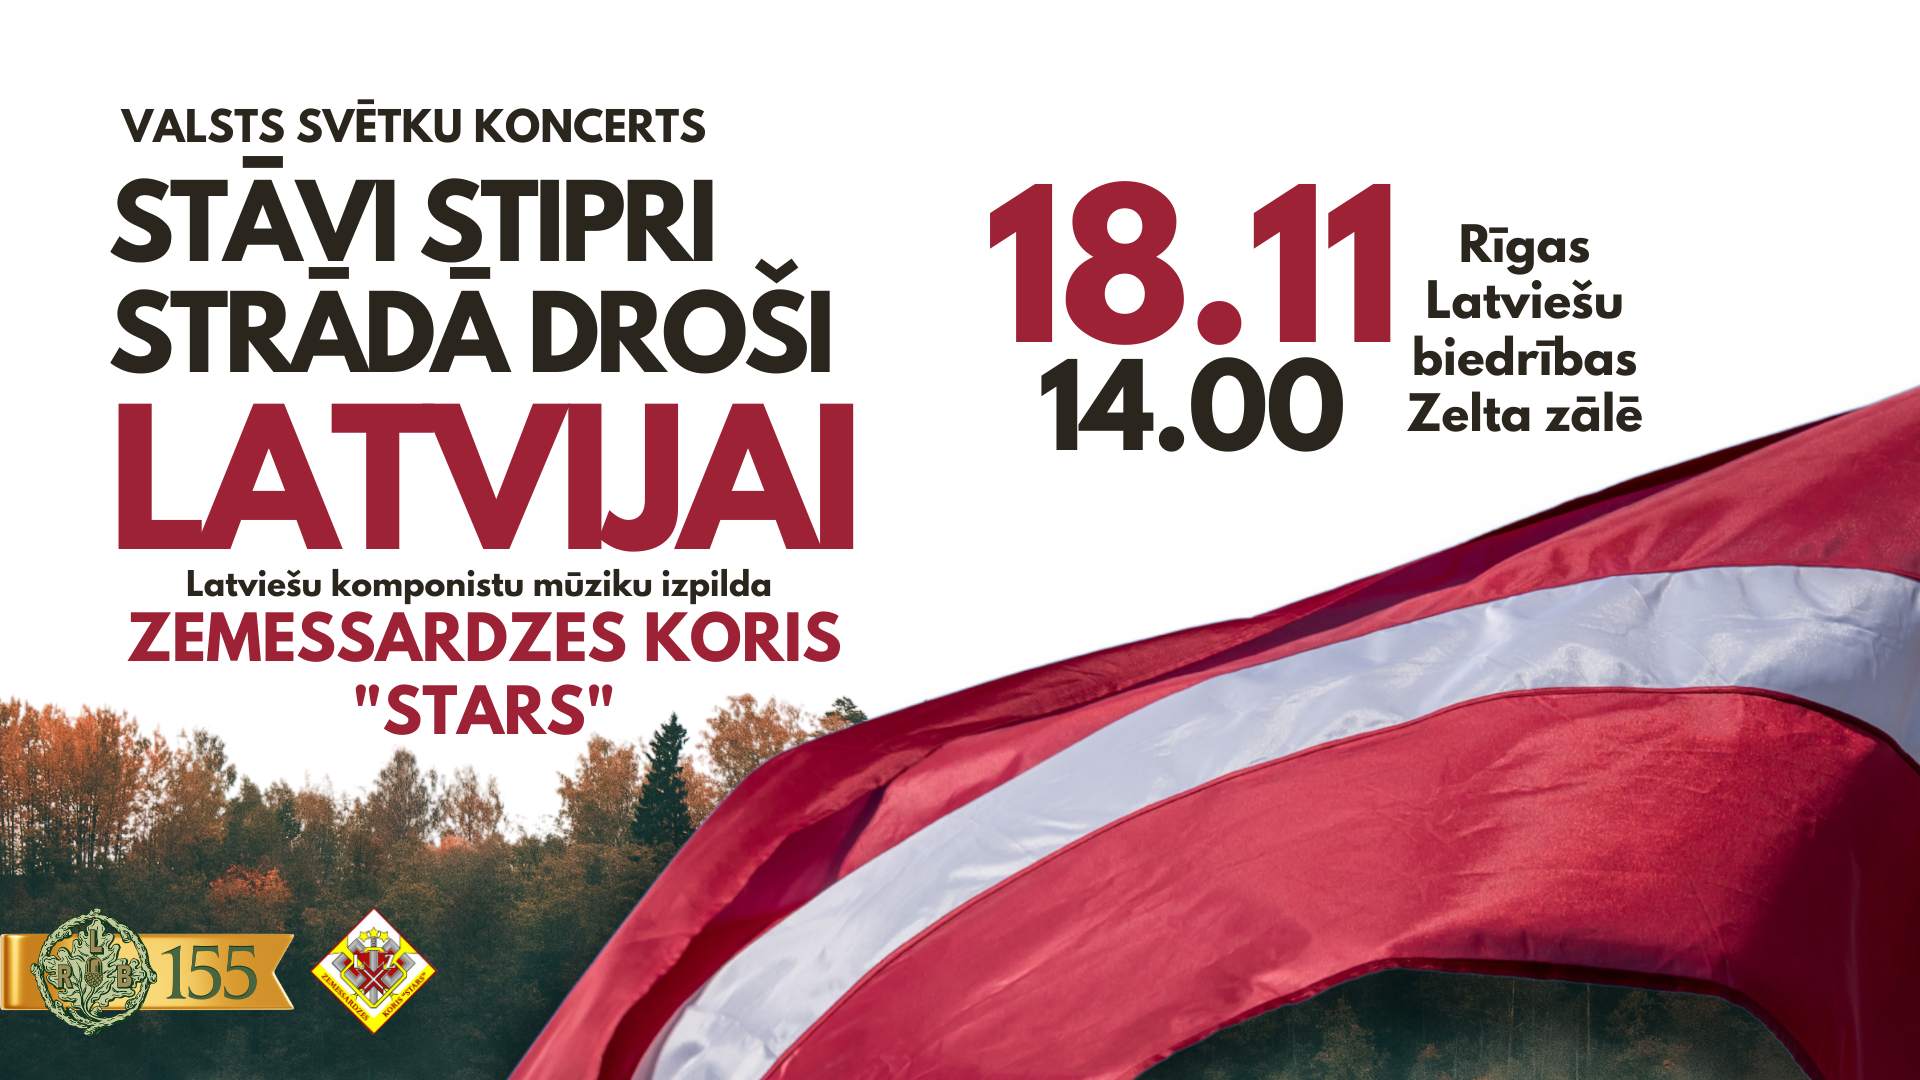 Valsts svētku koncerts Rīgas Latviešu biedrībā